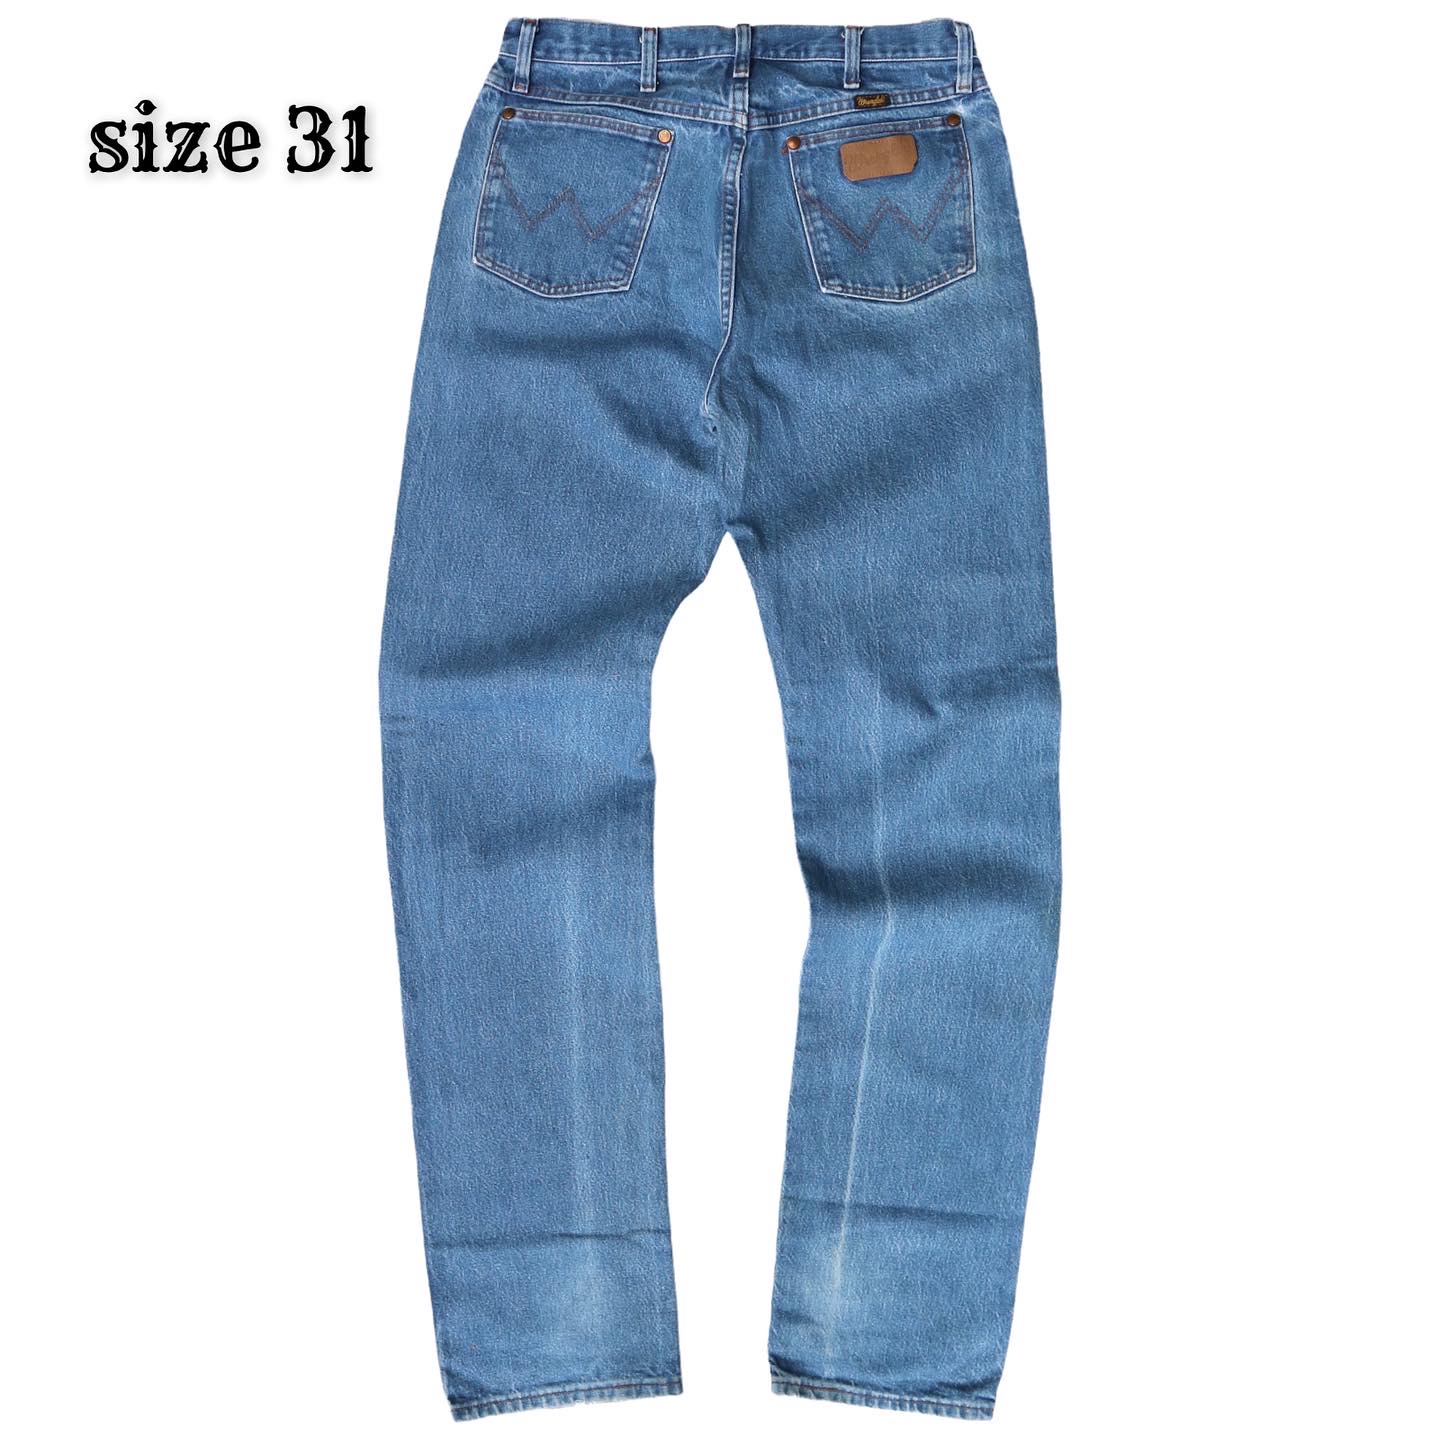 Wrangler Jeans Size 31 denimister